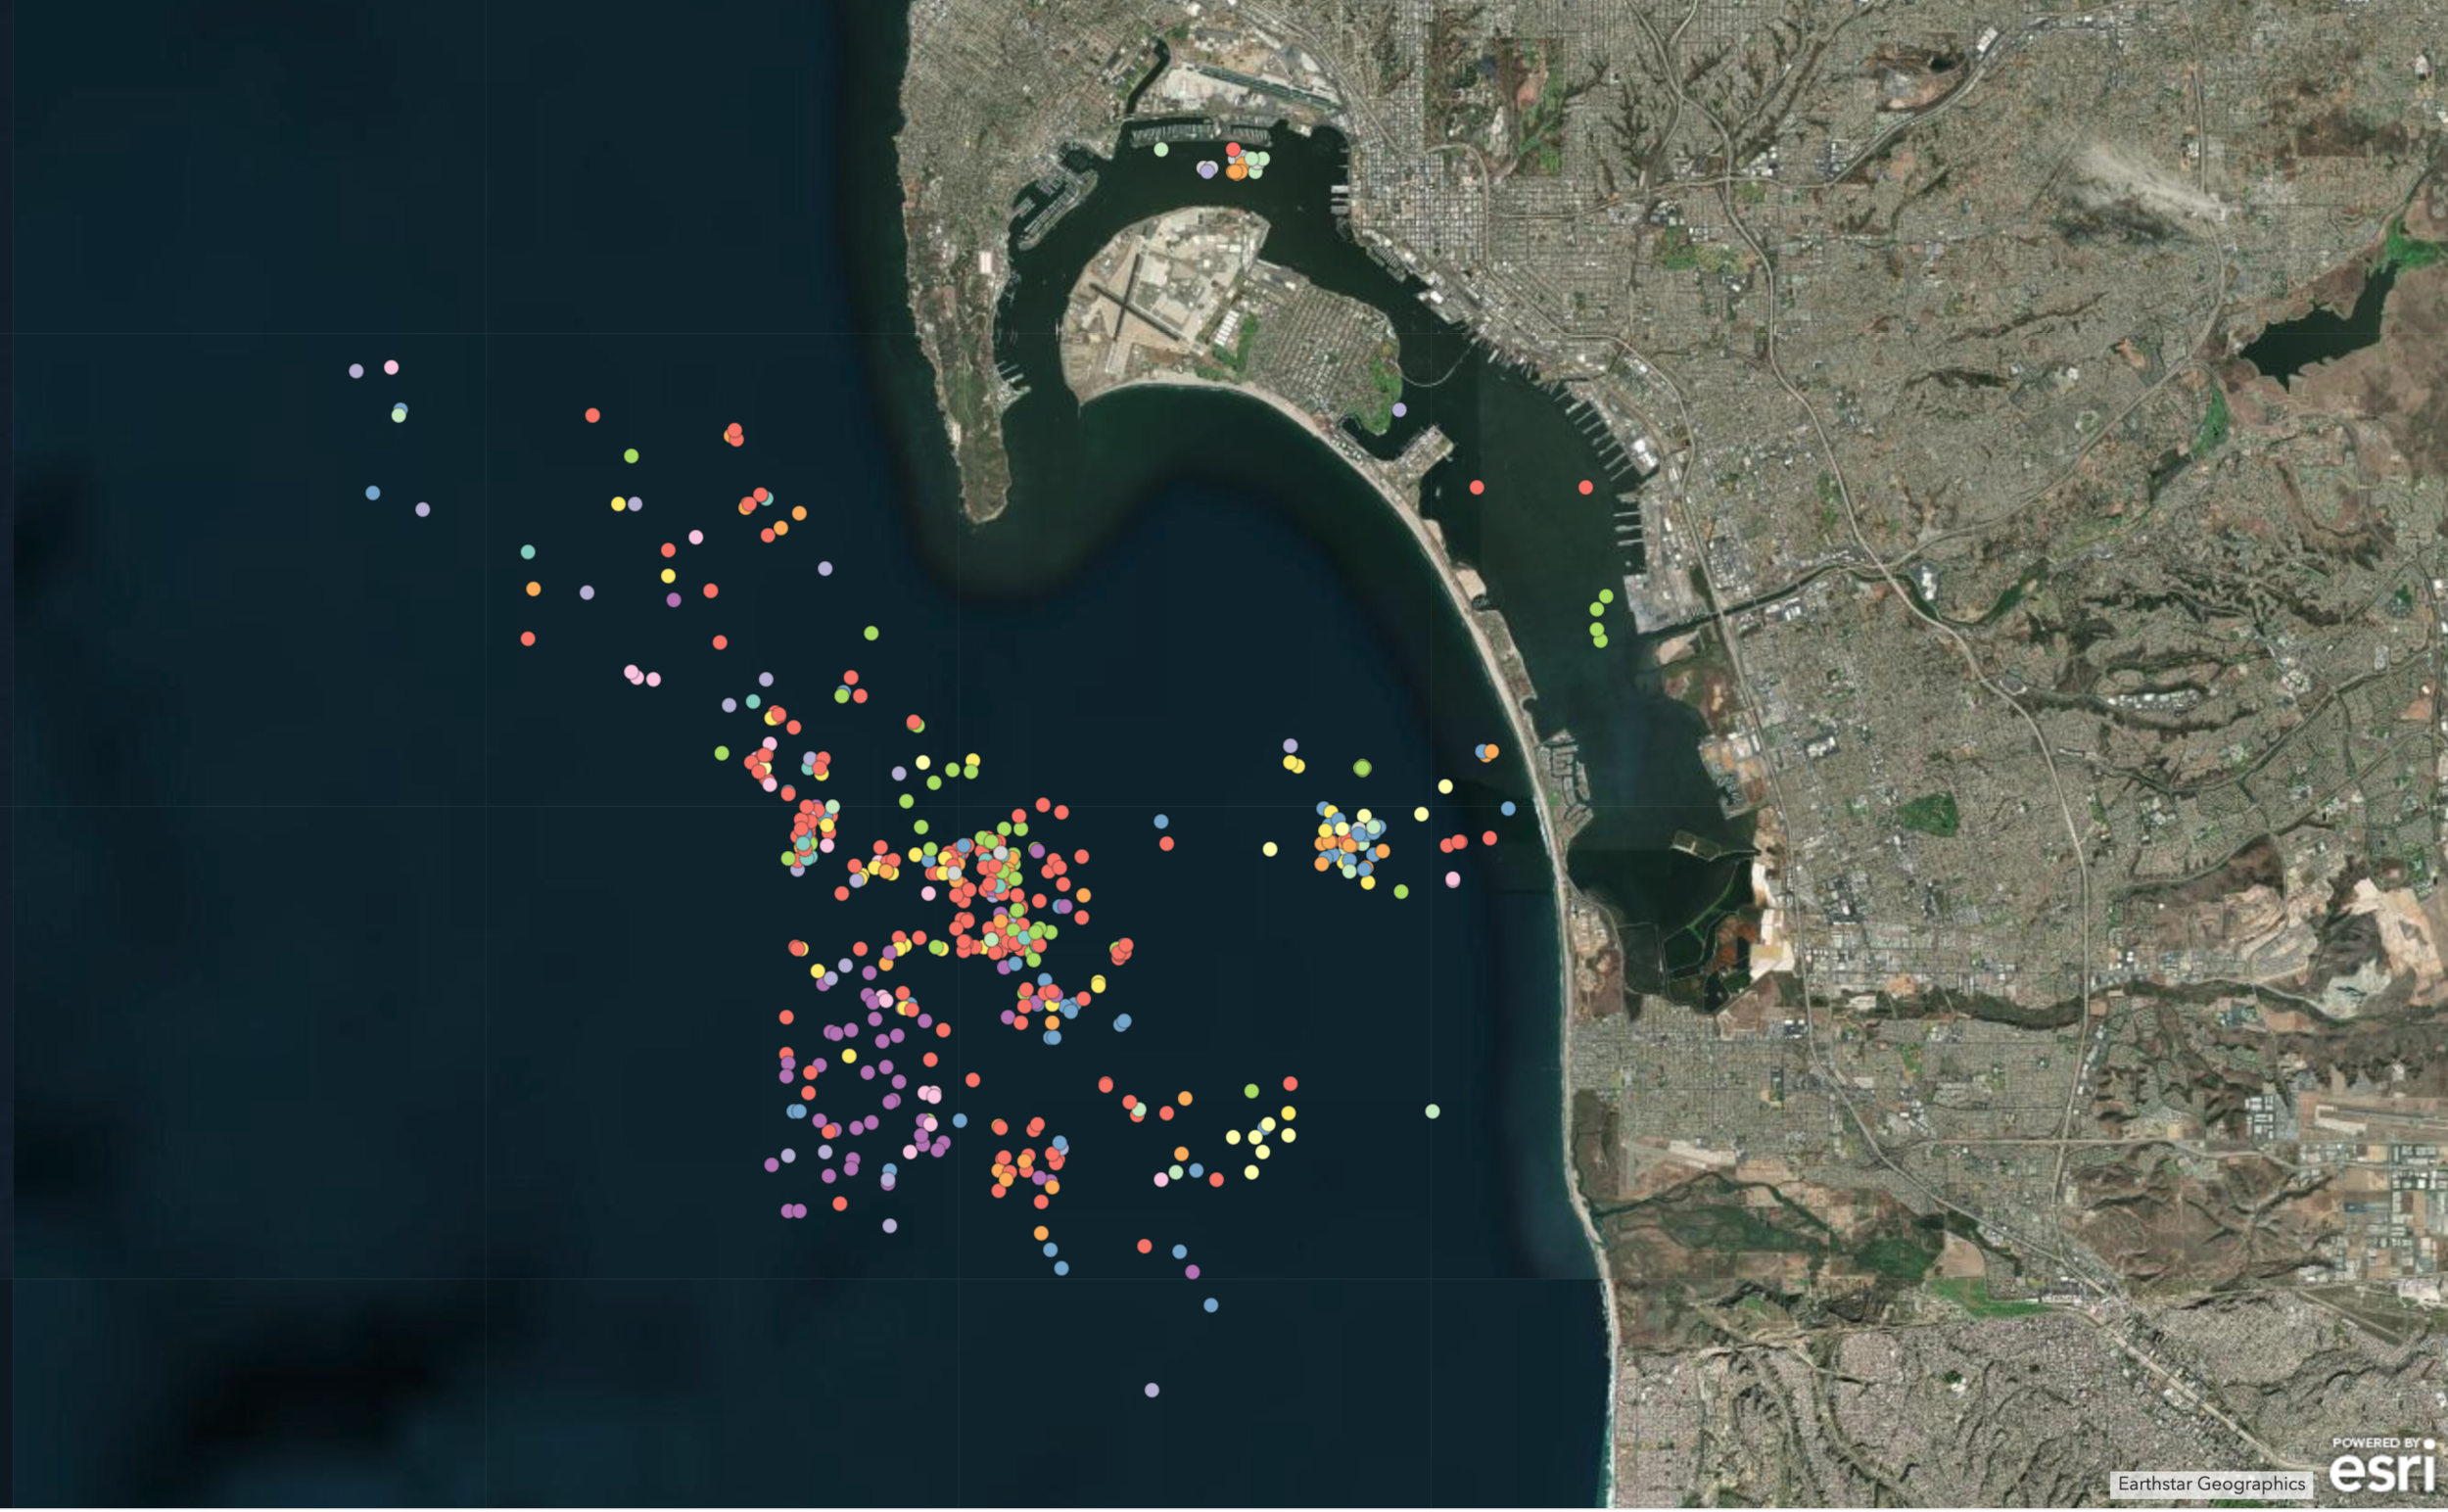 Underwater Debris Mapped in San Diego